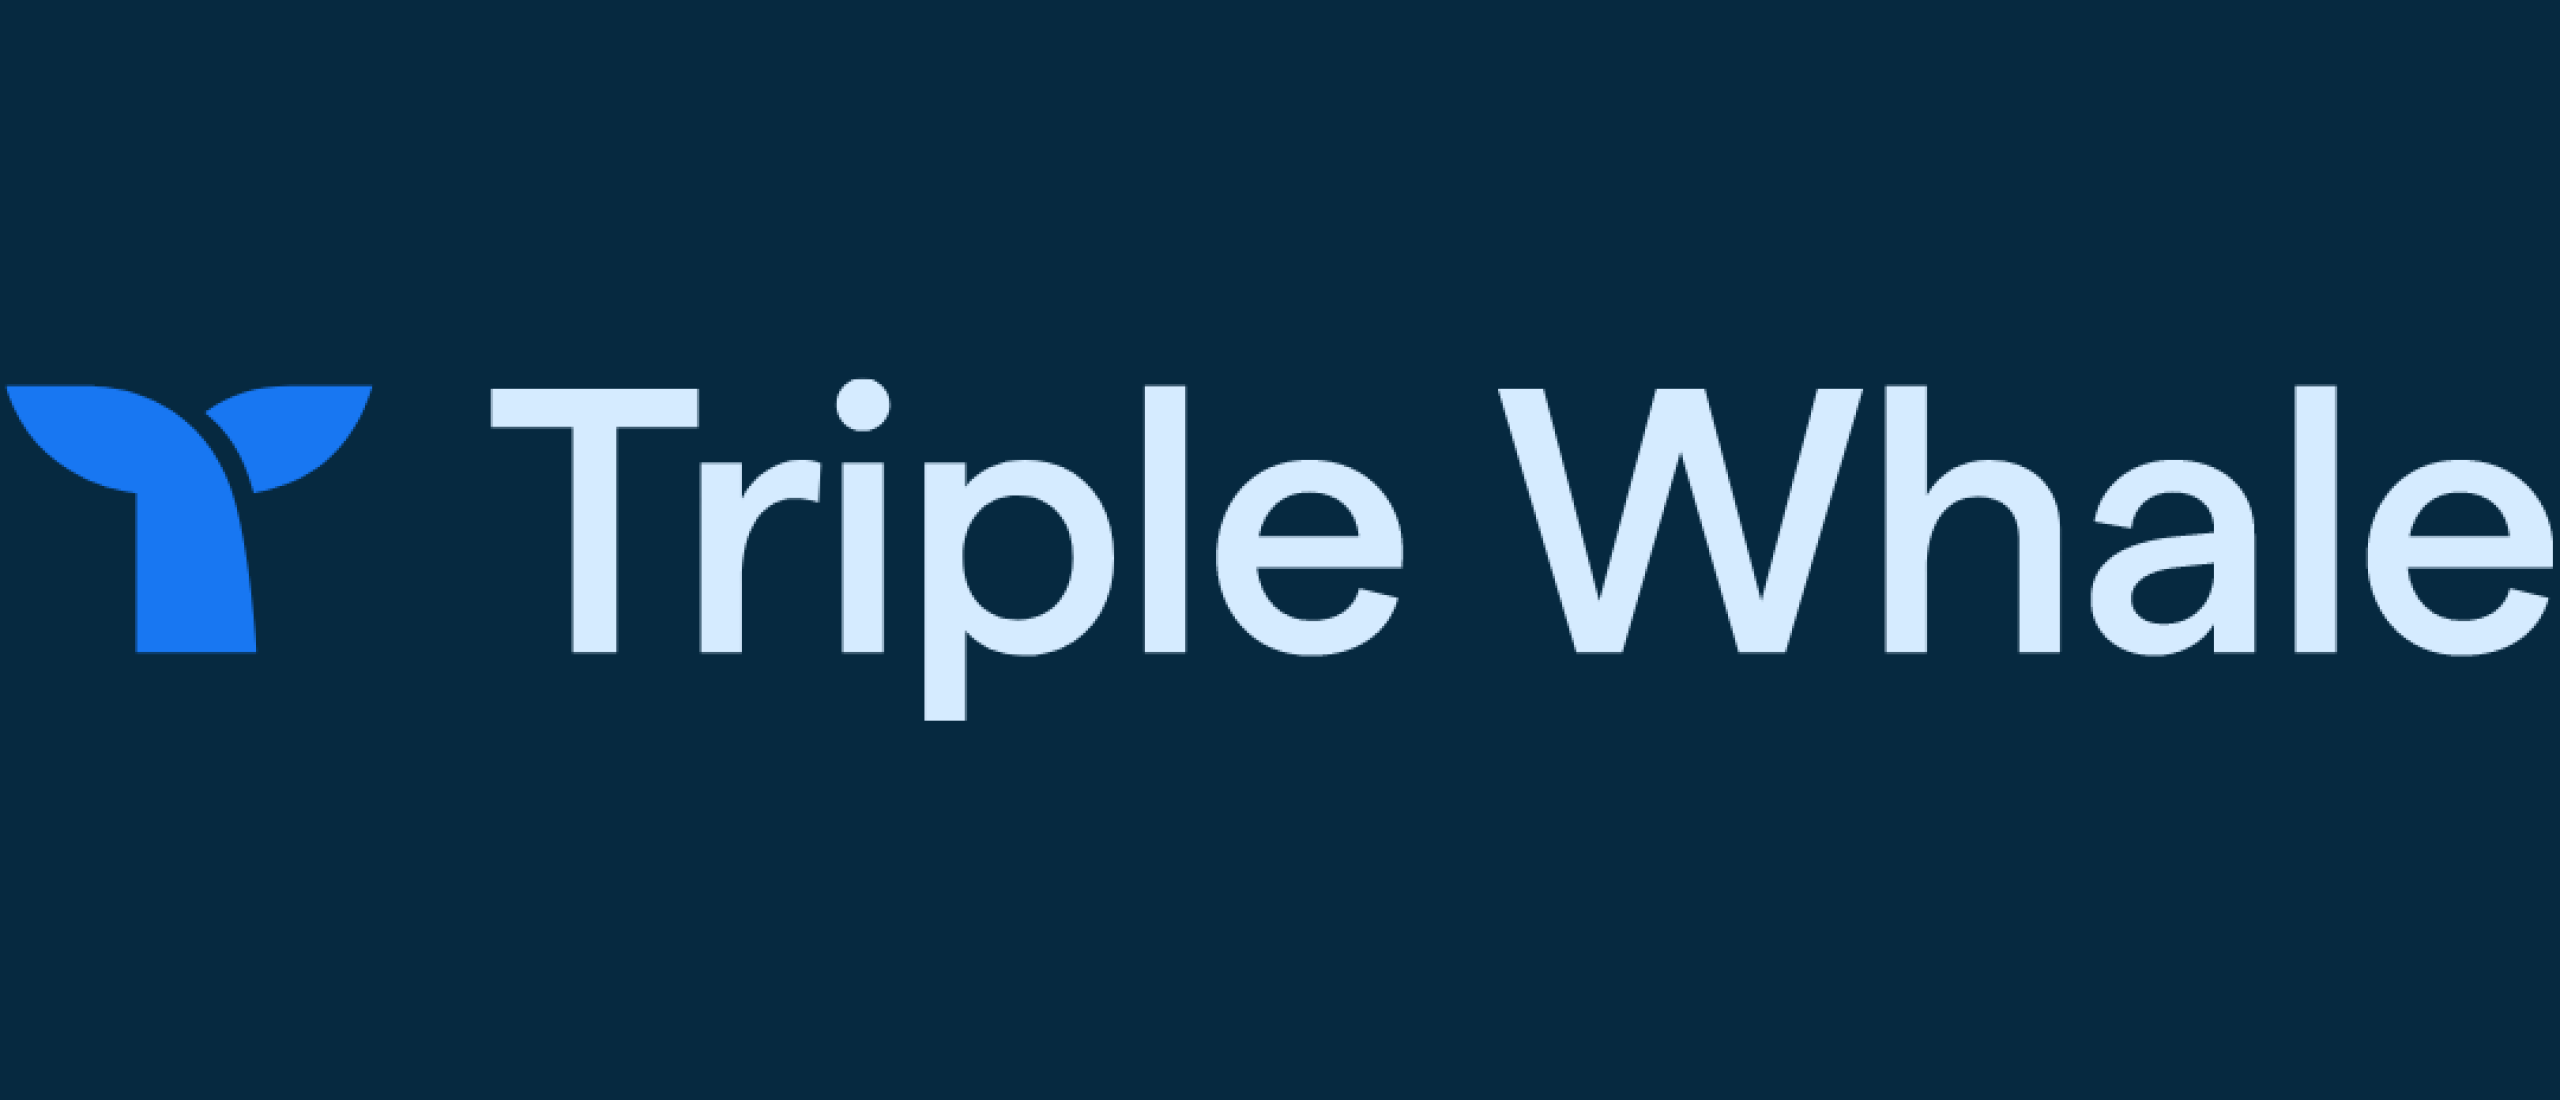 Triple Whale is dé oplossing voor problemen met Facebook of TikTok pixel tracking.